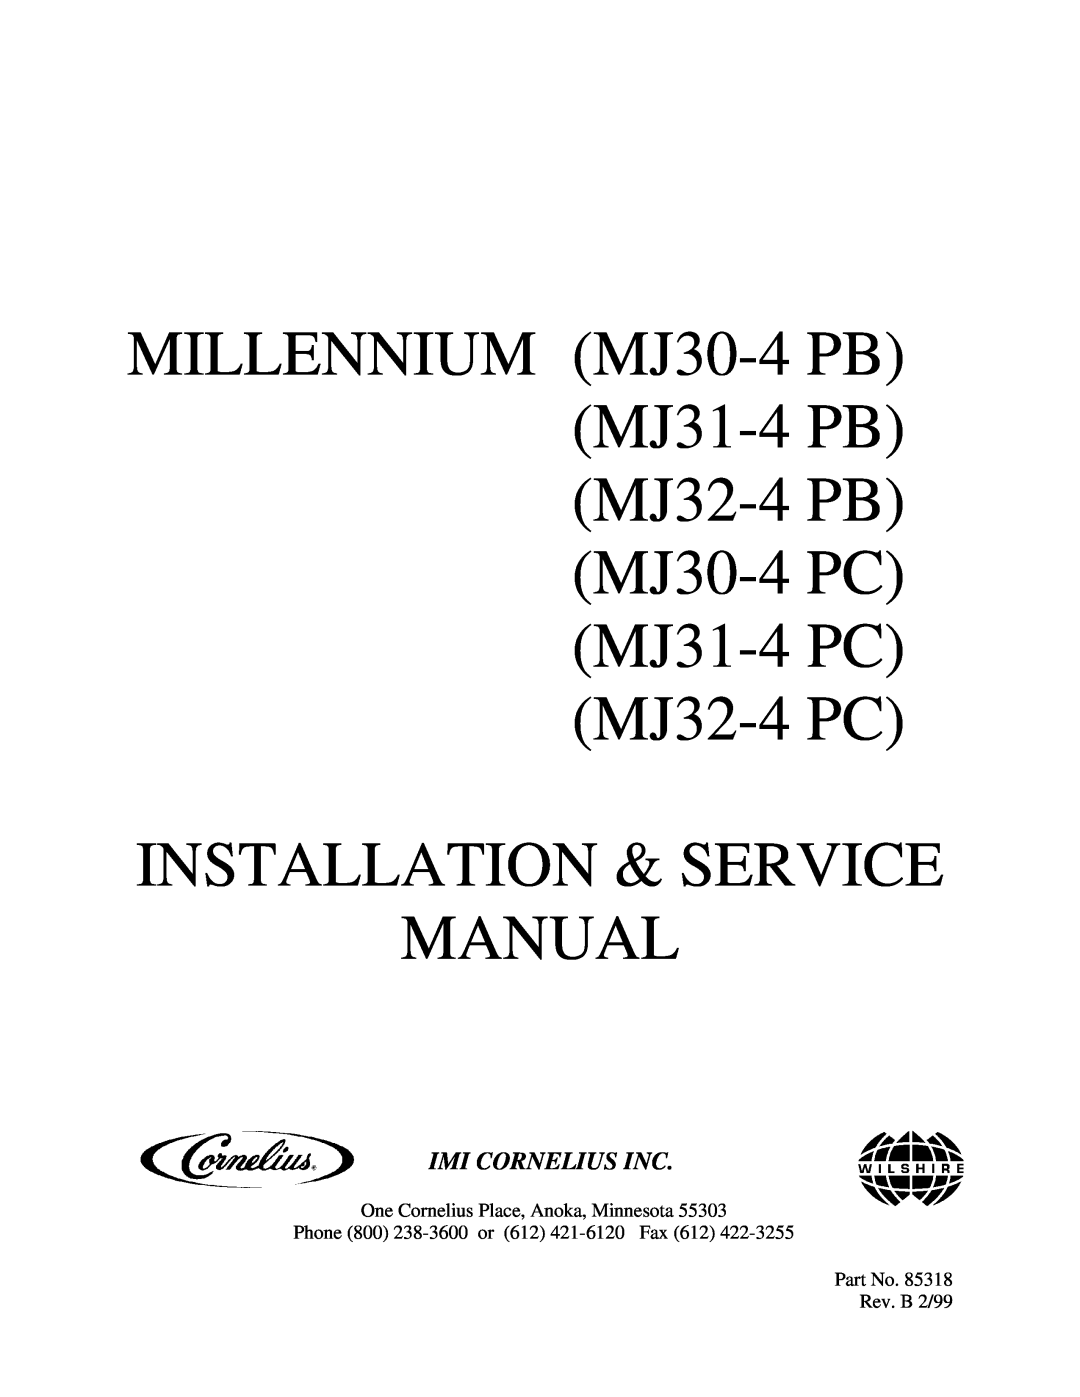 Cornelius MJ32-4 PC, MJ32-4 PB, MJ30-4 PB, MJ30-4 PC, MJ31-4 PB, MJ31-4 PC service manual Imi Cornelius Inc 